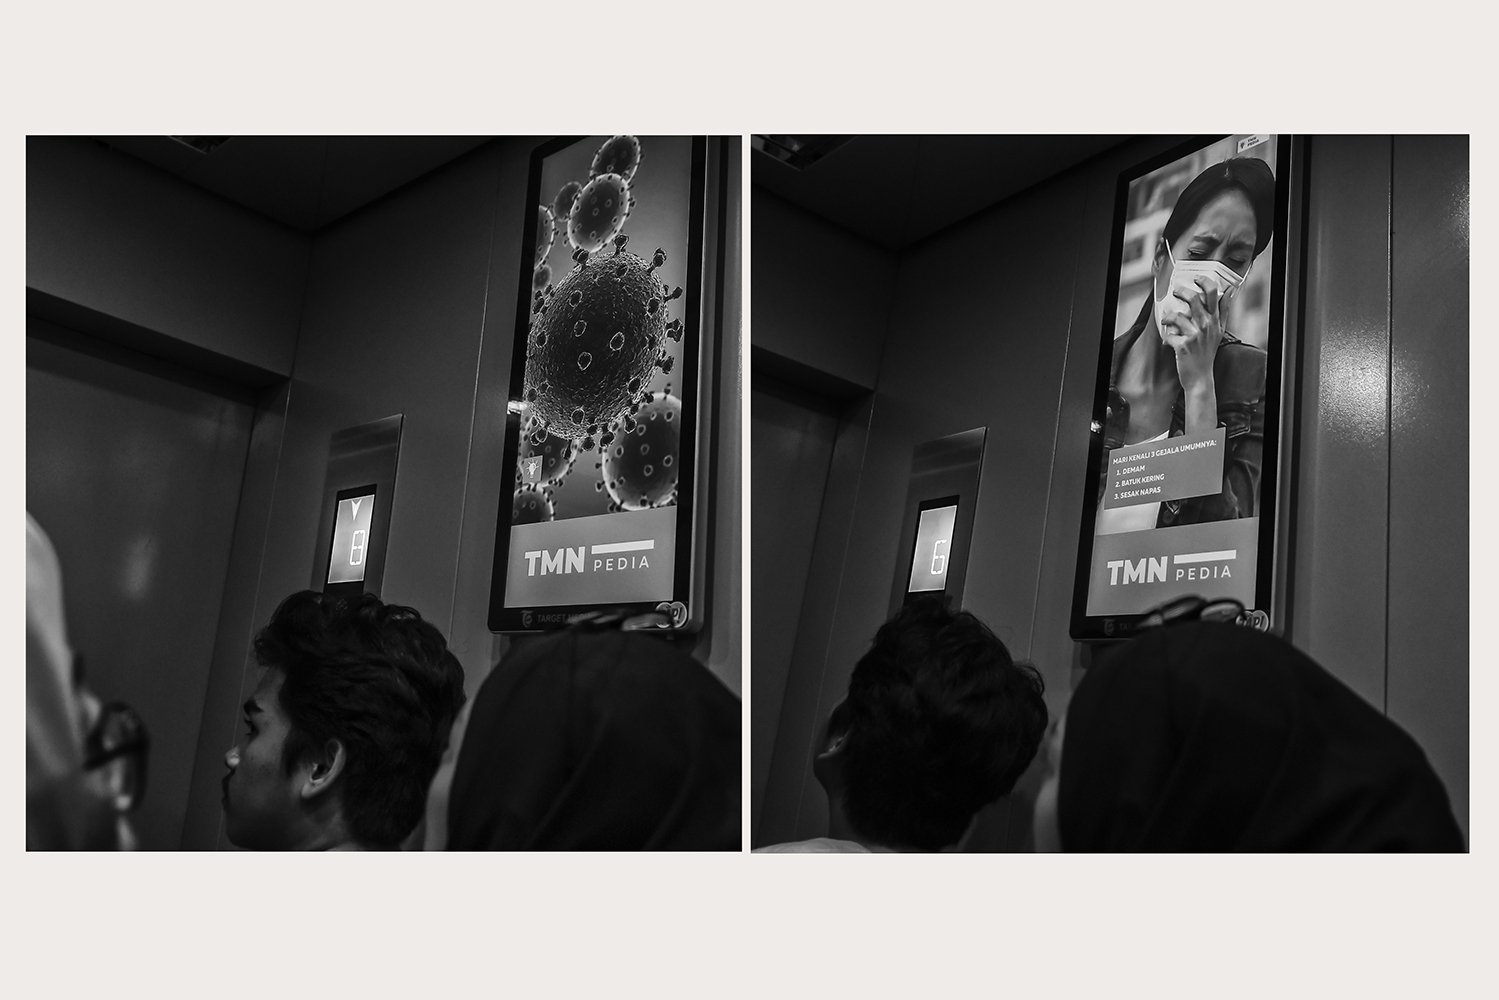 Tampilan virus Corona atau COVID-19 (kiri) dan adegan orang dengan gejala COVID-19 di sebuah layar iklan layanan masyarakat di Jakarta.